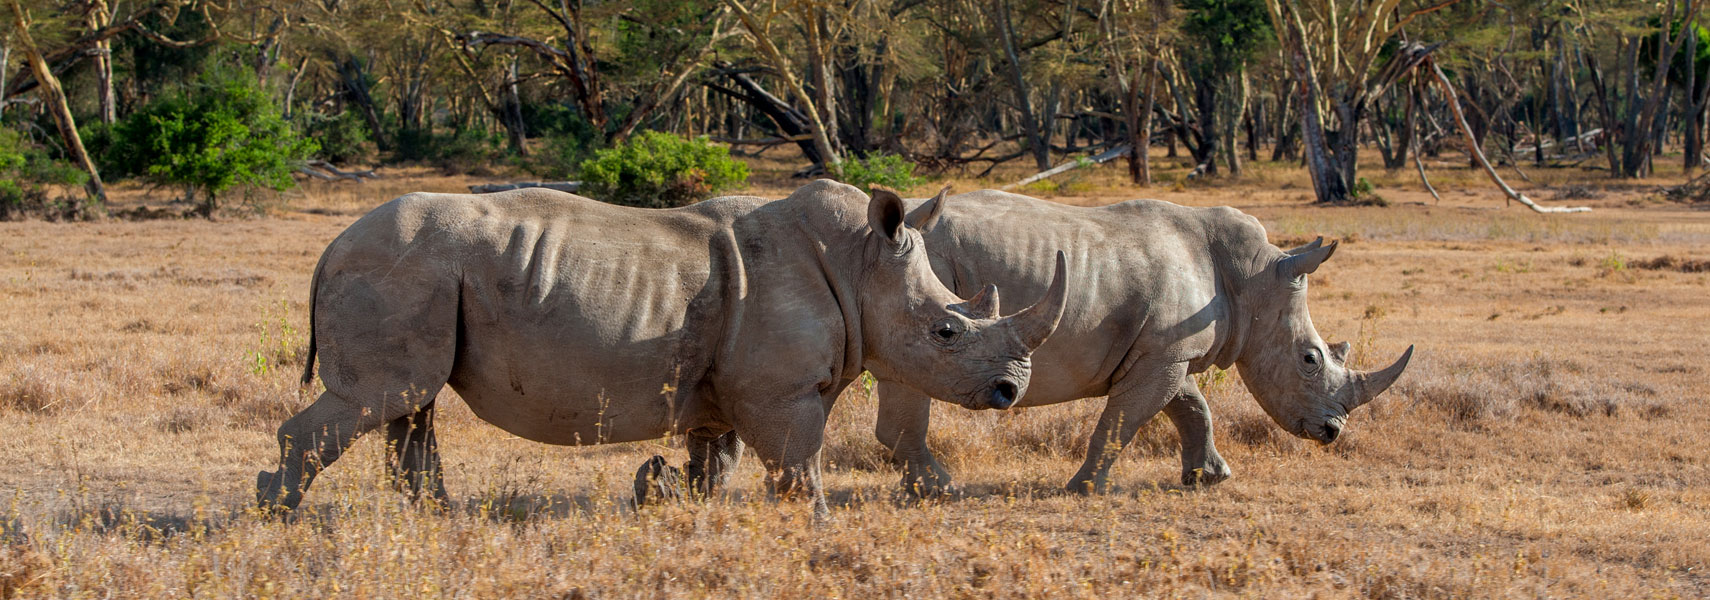 kenya-big-five-rinoceronti